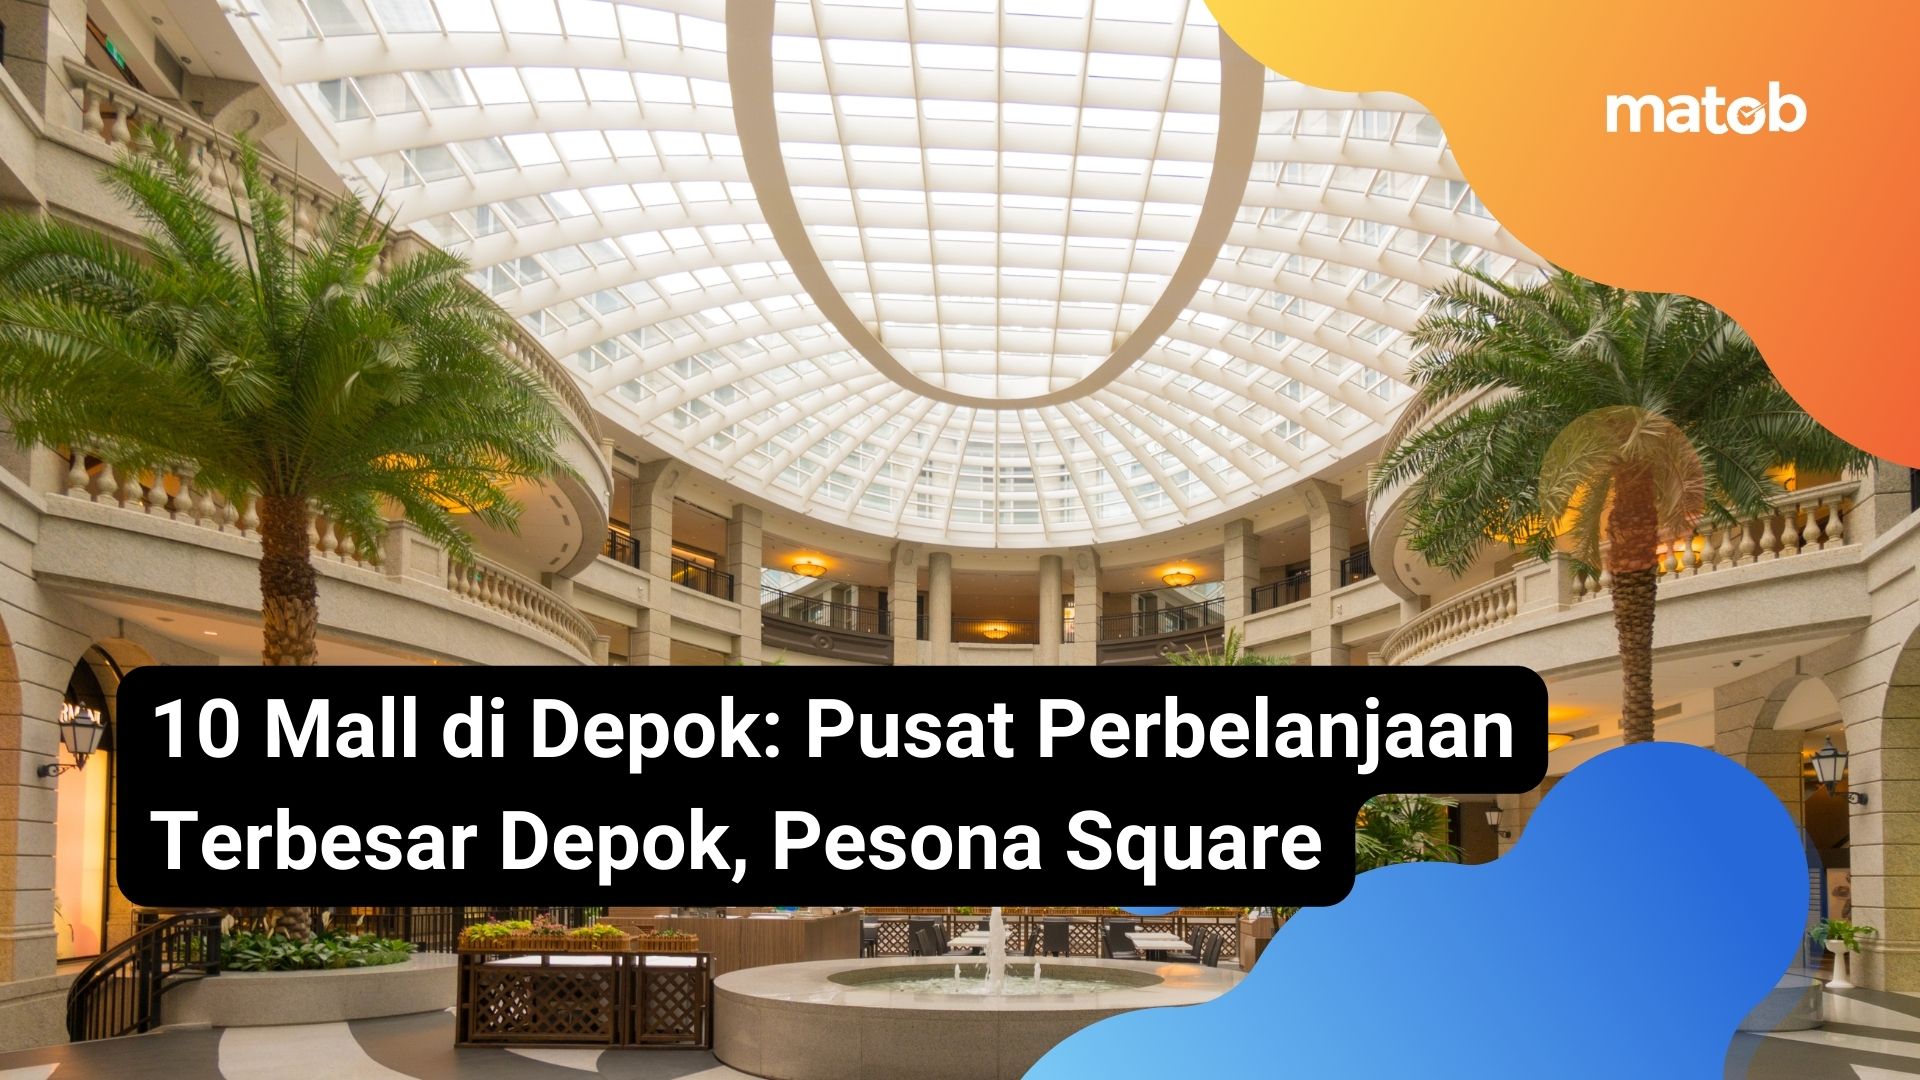 10 Mall di Depok: Pusat Perbelanjaan Terbesar Depok, Pesona Square